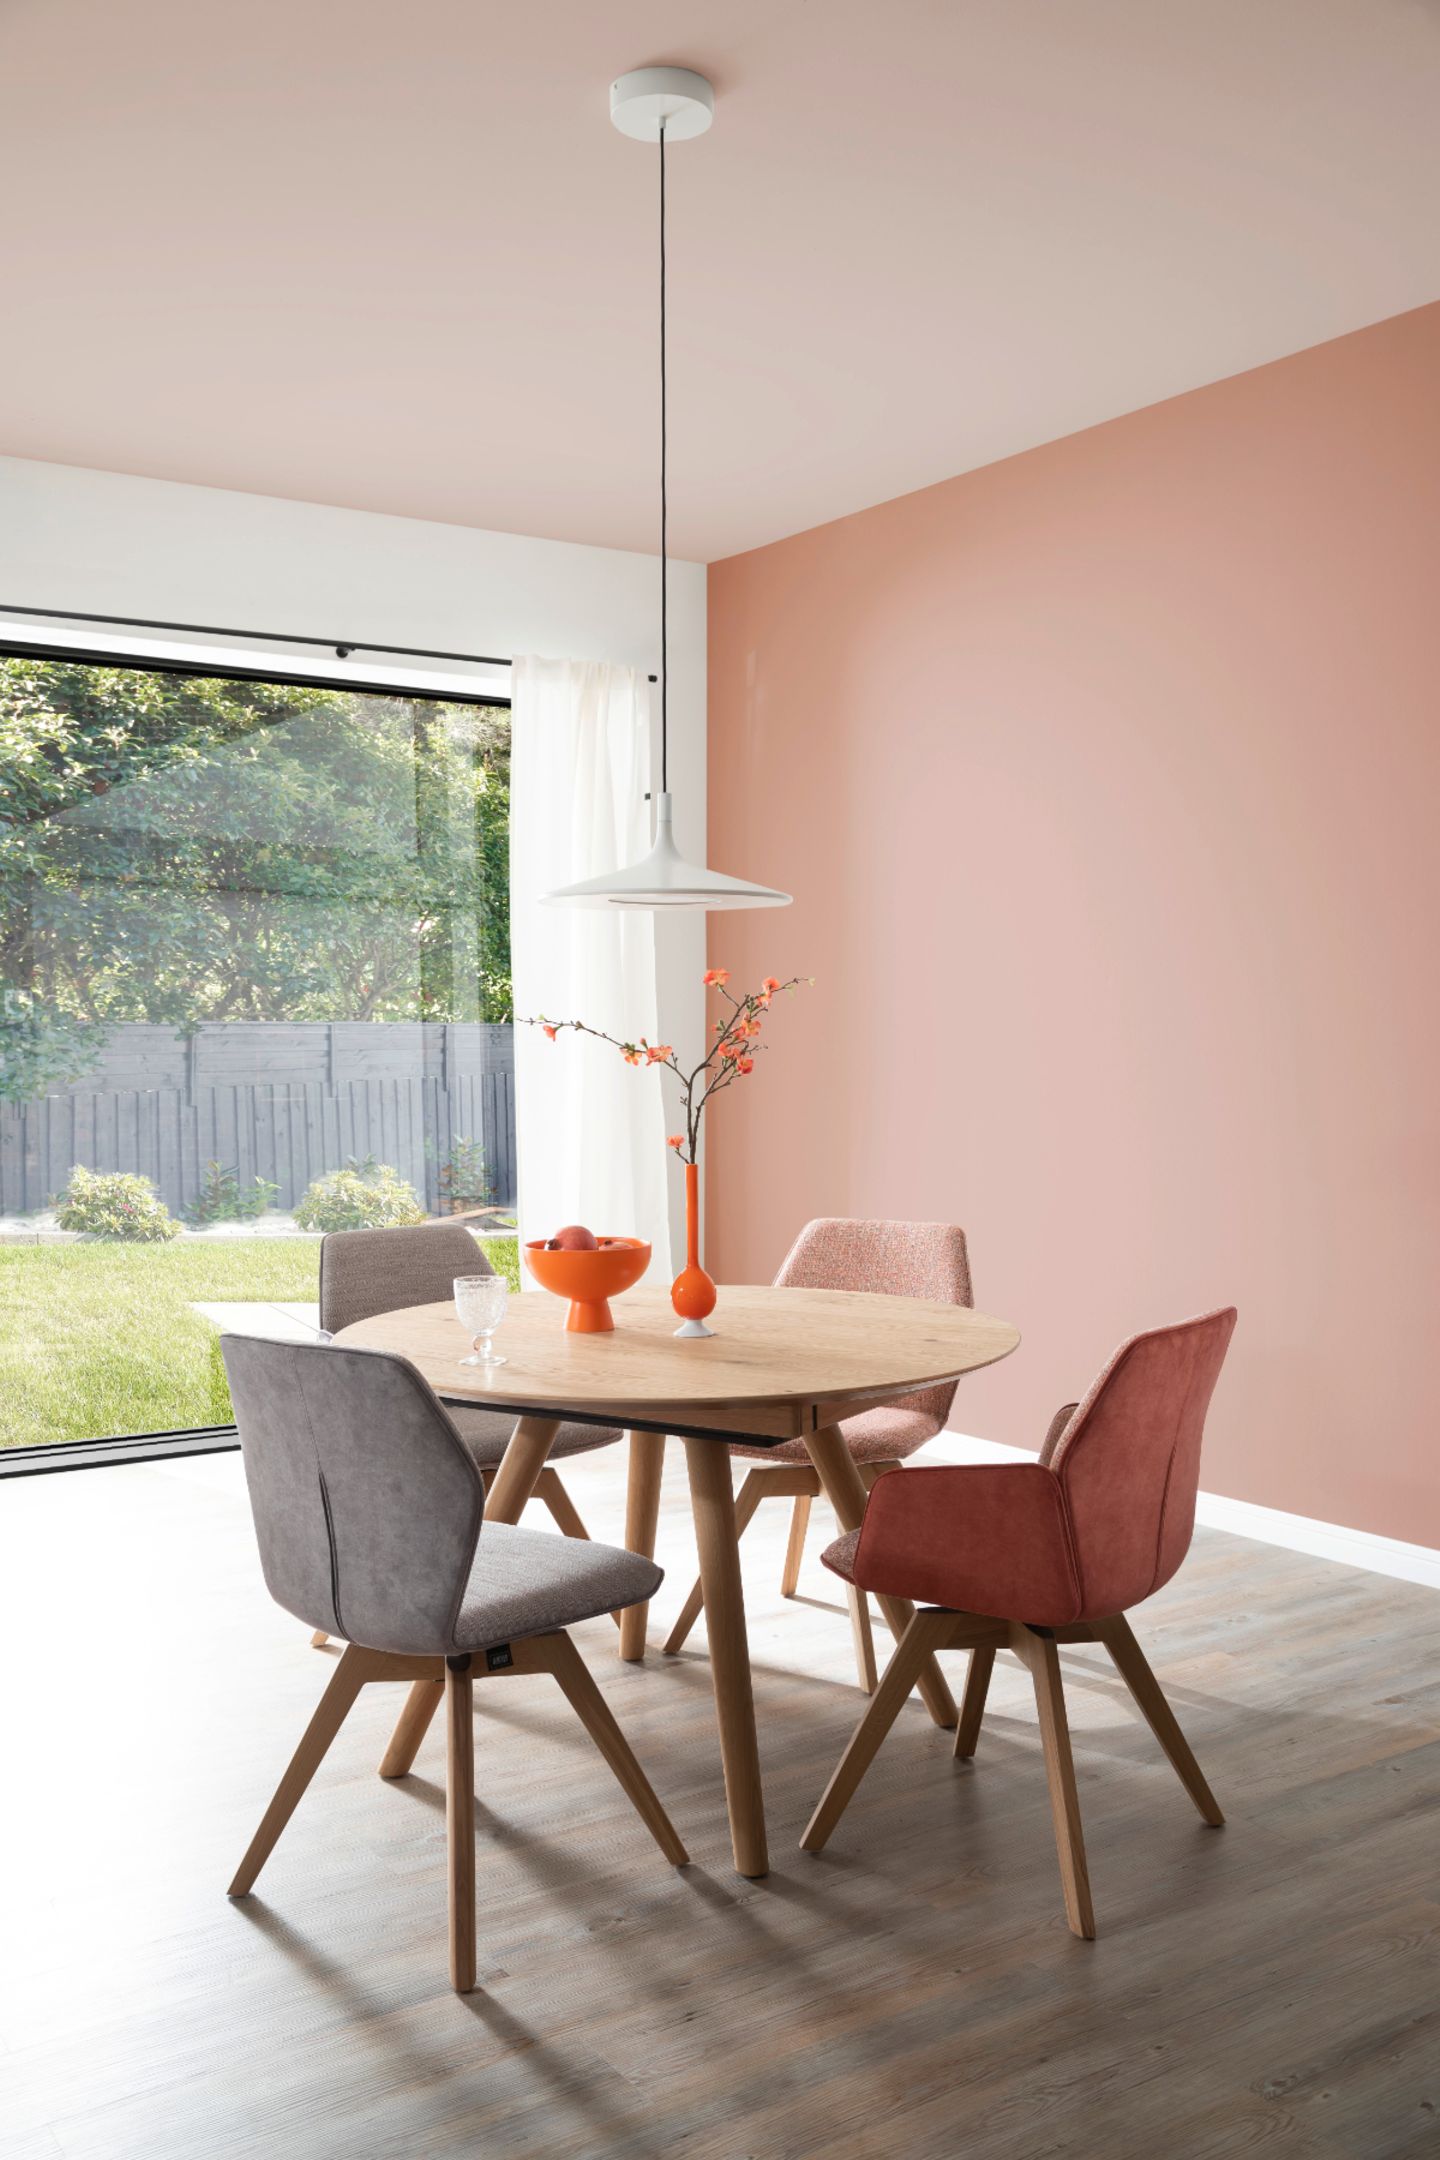 Helles Esszimmer mit rundem Esstisch vor großer Fensterfront und rosafarbener Wand und Decke